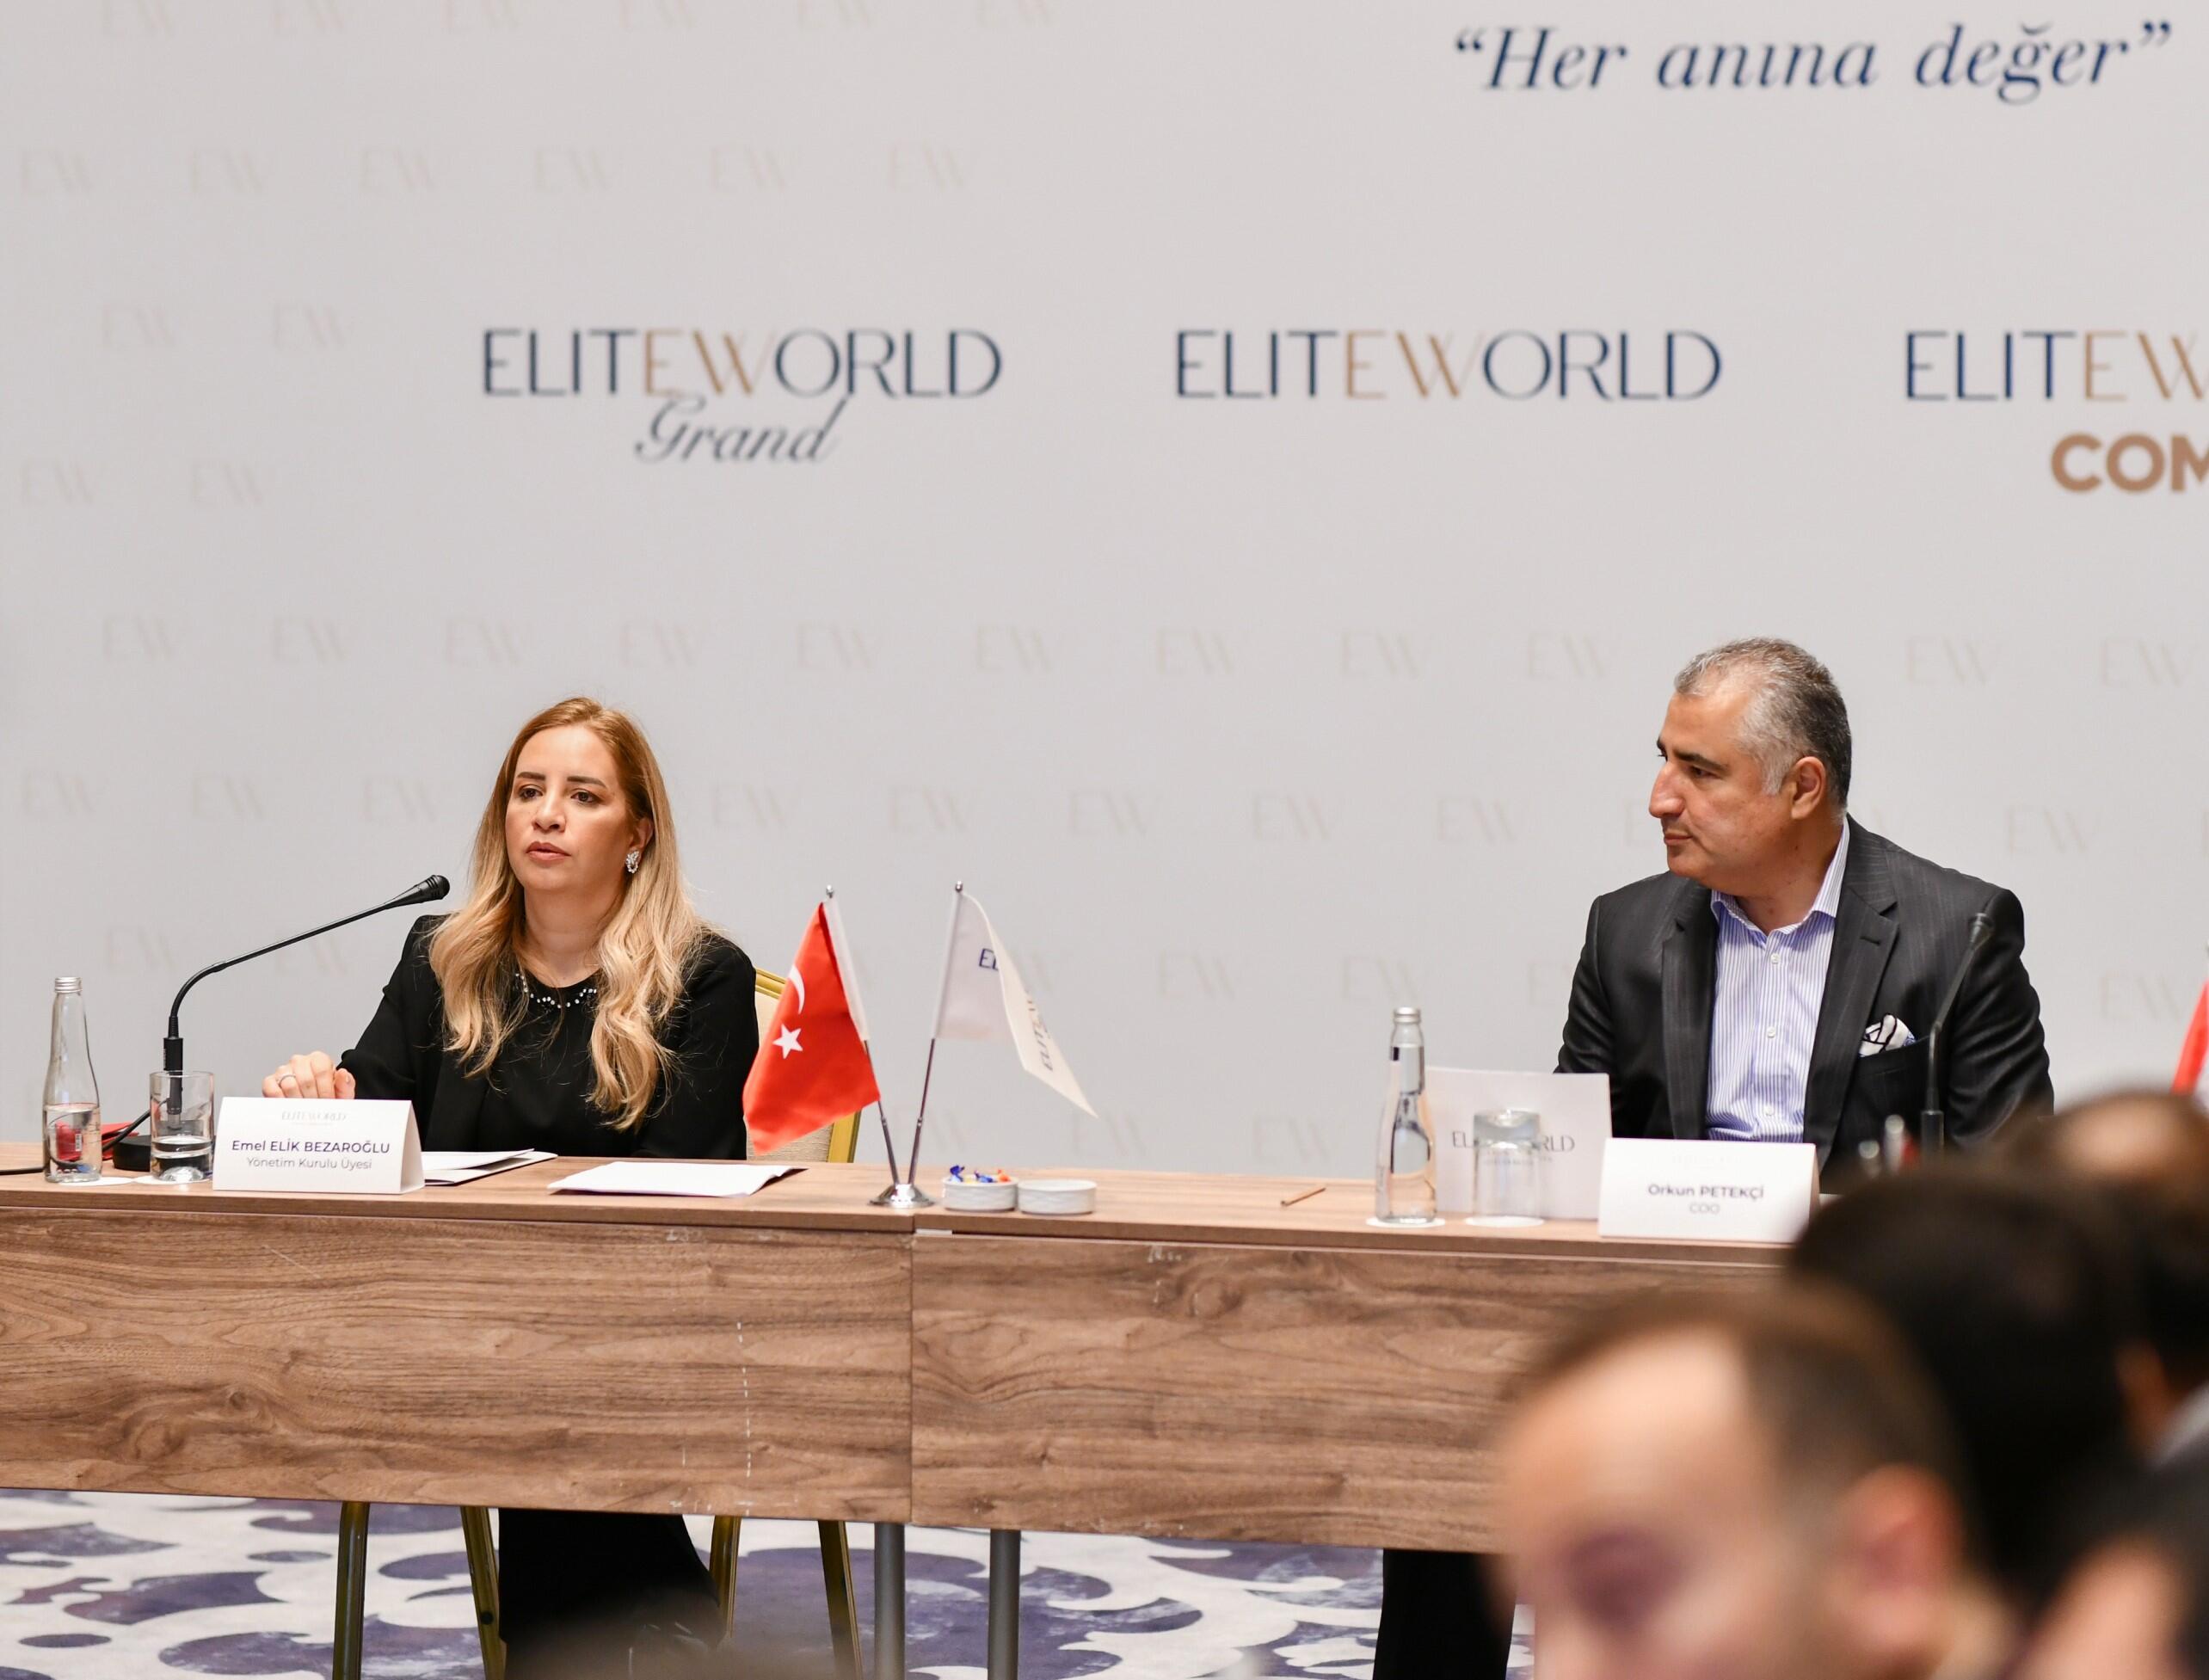 Elite World Hotels & Resorts, 4 yeni markası ile Türk yatırımcılarla bir araya gelmeyi hedefliyor